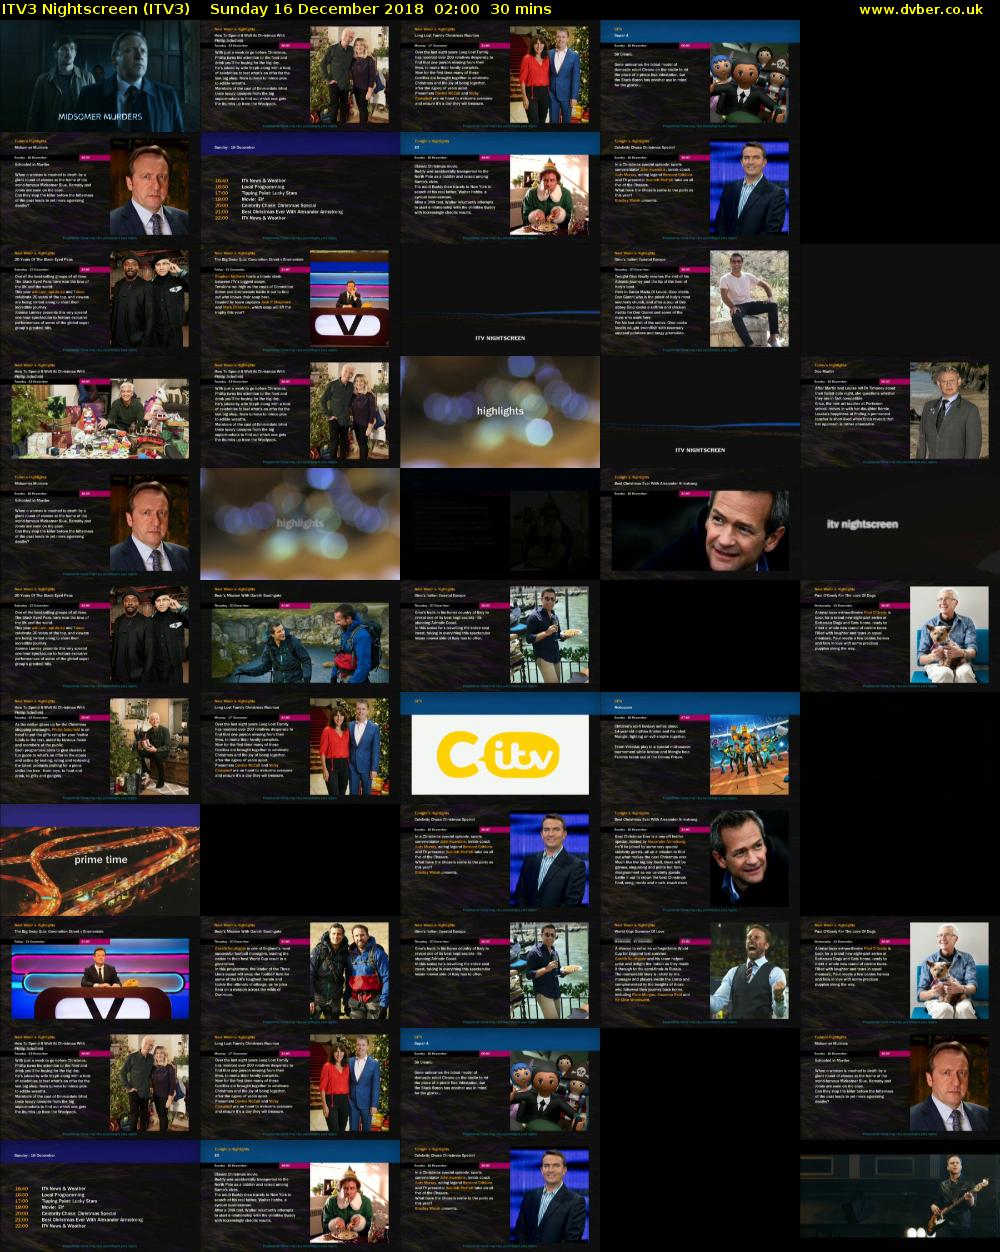 ITV3 Nightscreen (ITV3) Sunday 16 December 2018 02:00 - 02:30